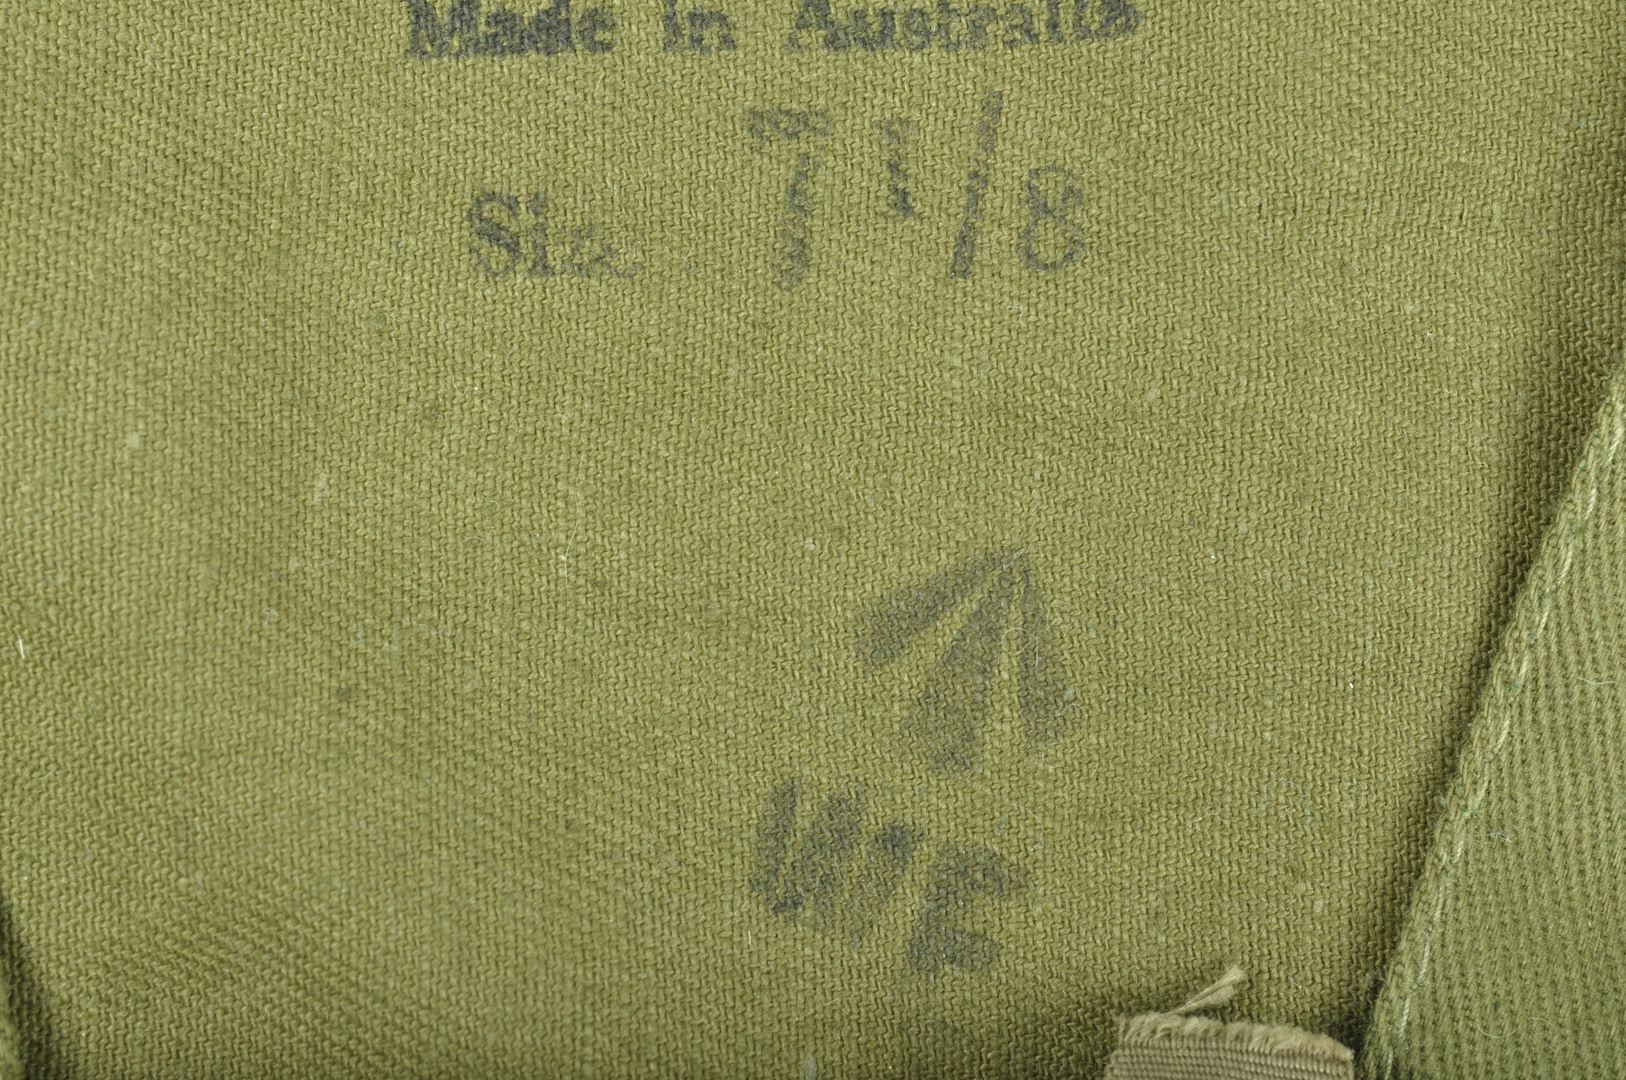 Béret de Jungle Australien daté 1945 / Gurkha